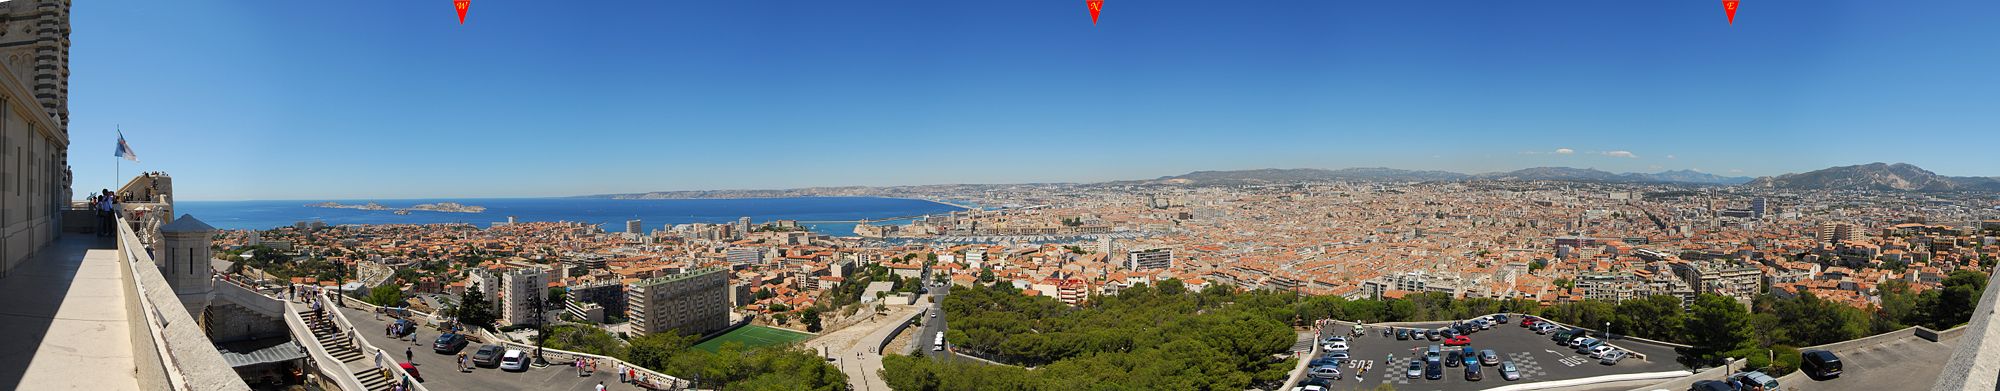 Panoramablick auf Marseille, von Notre Dame de la Garde aus gesehen